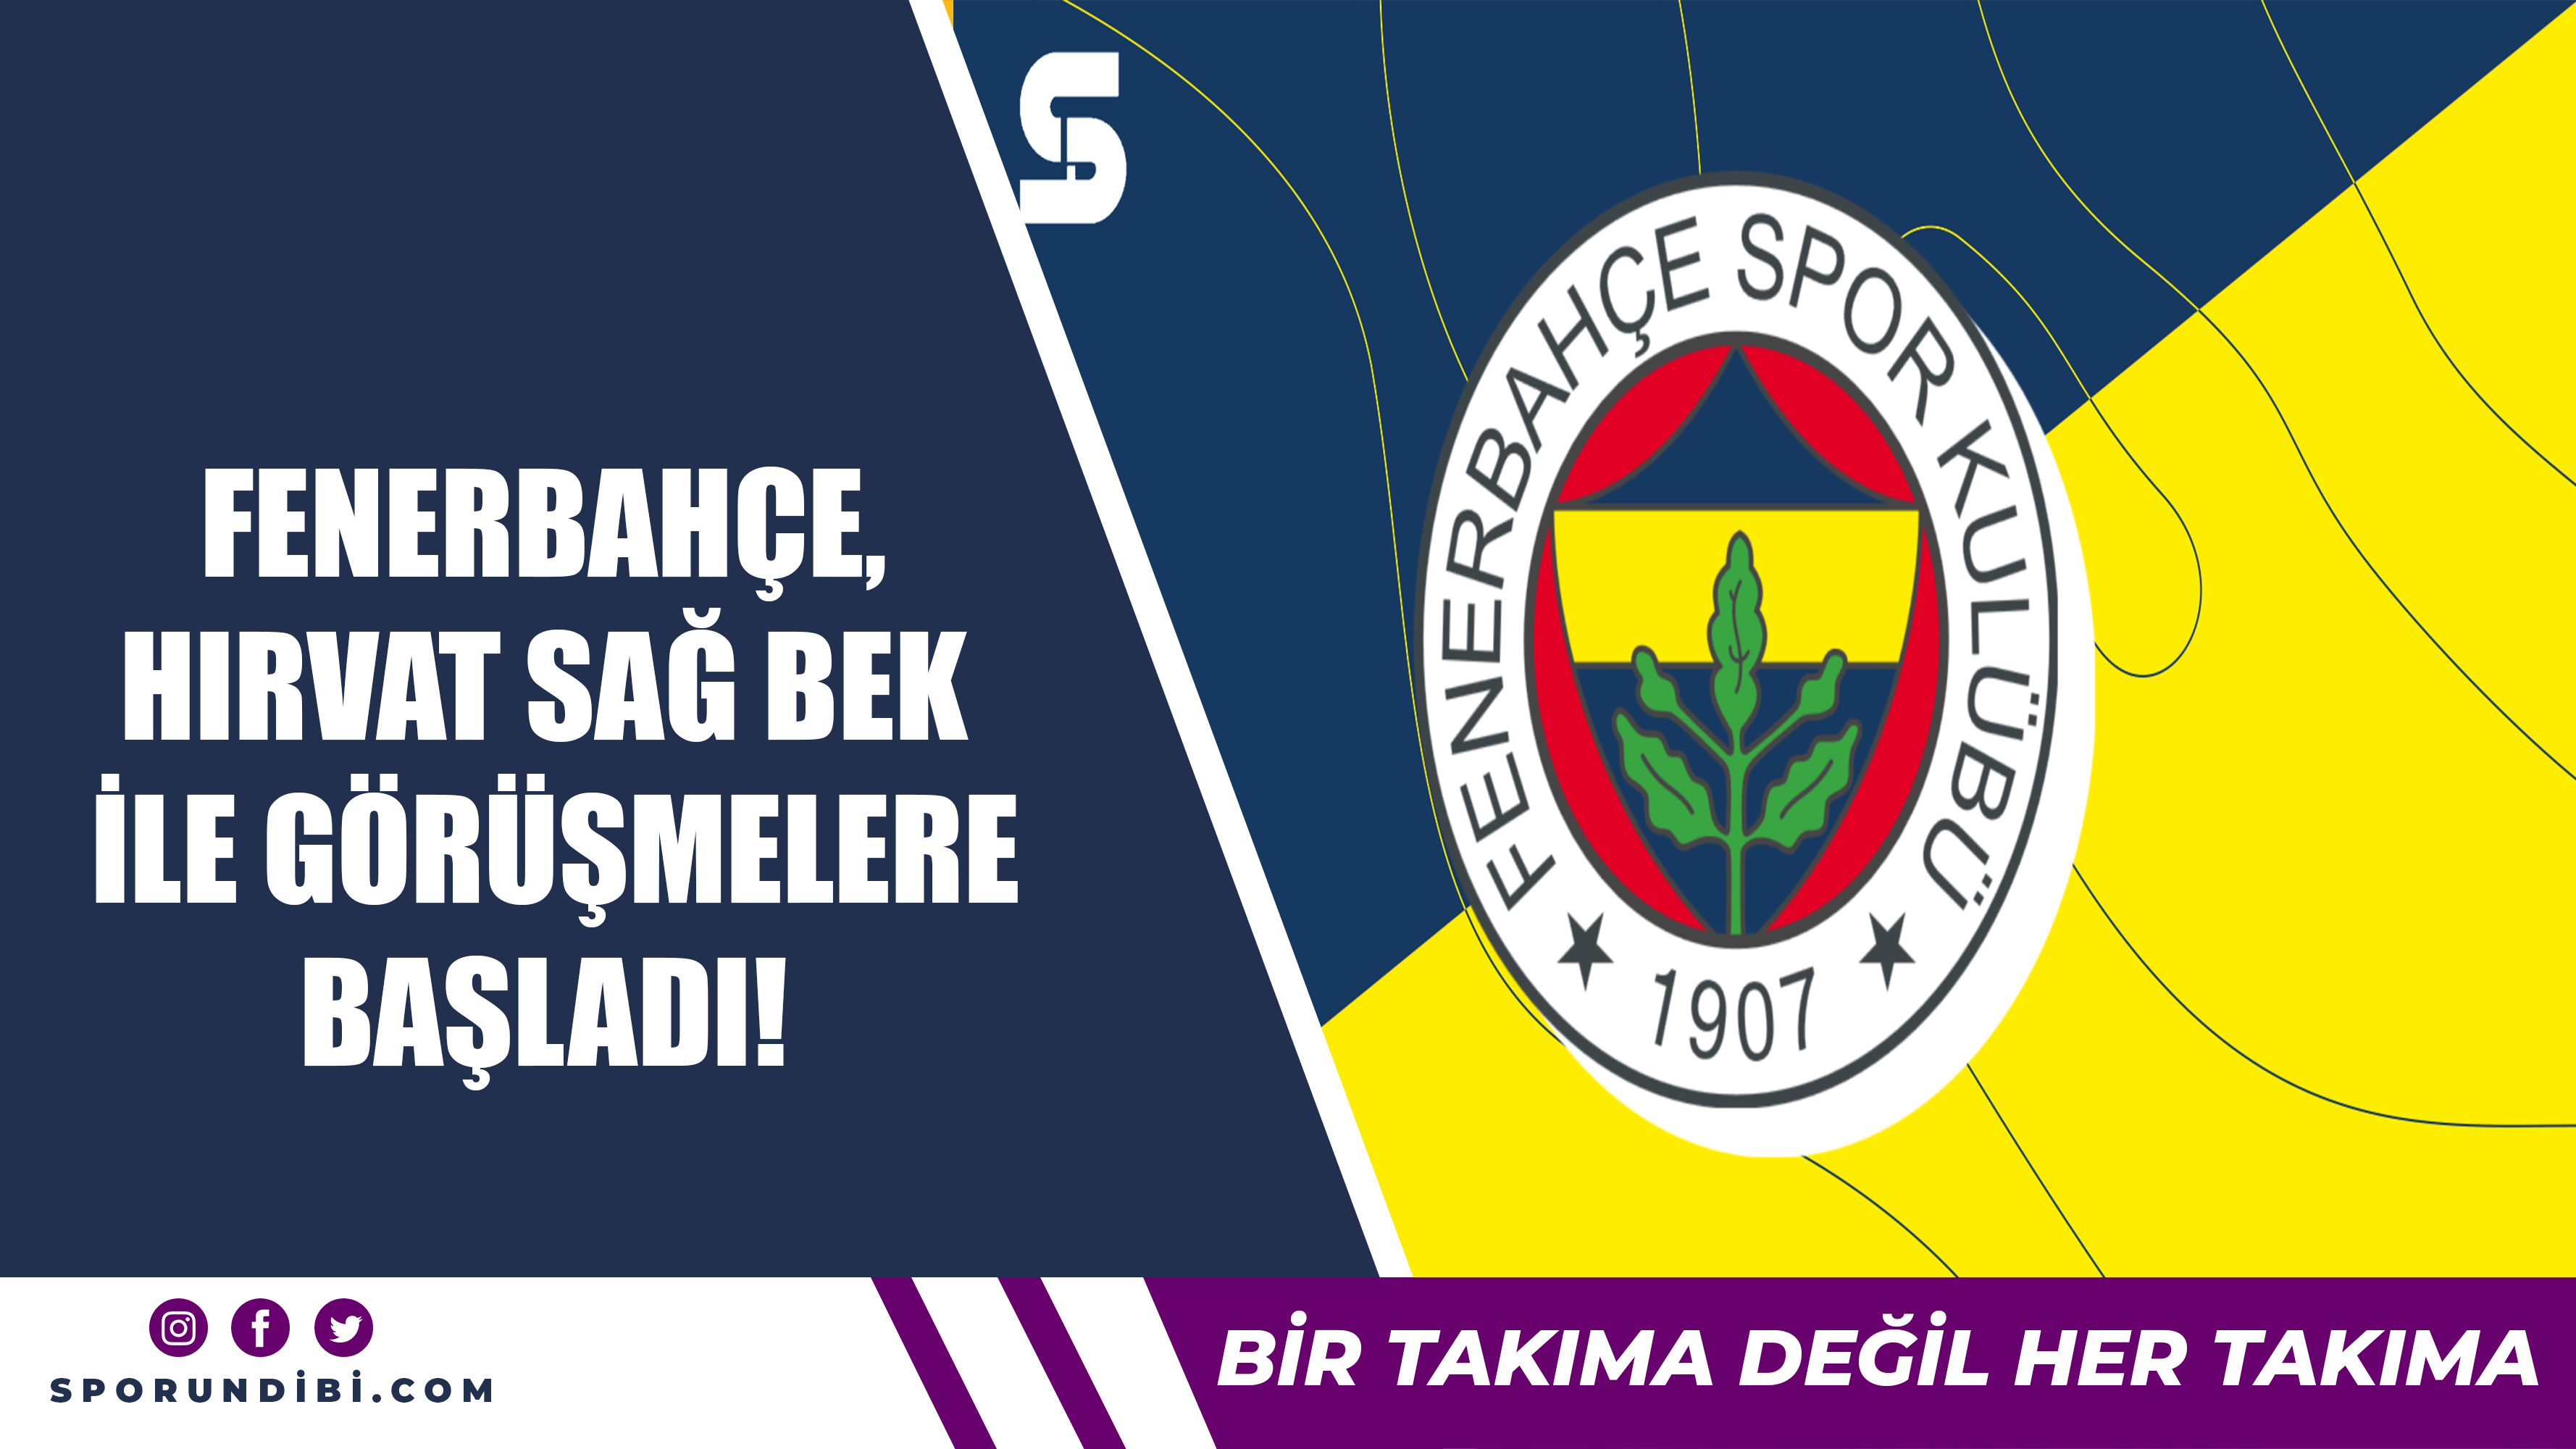 Fenerbahçe, Hırvat sağ bek ile görüşmelere başladı!